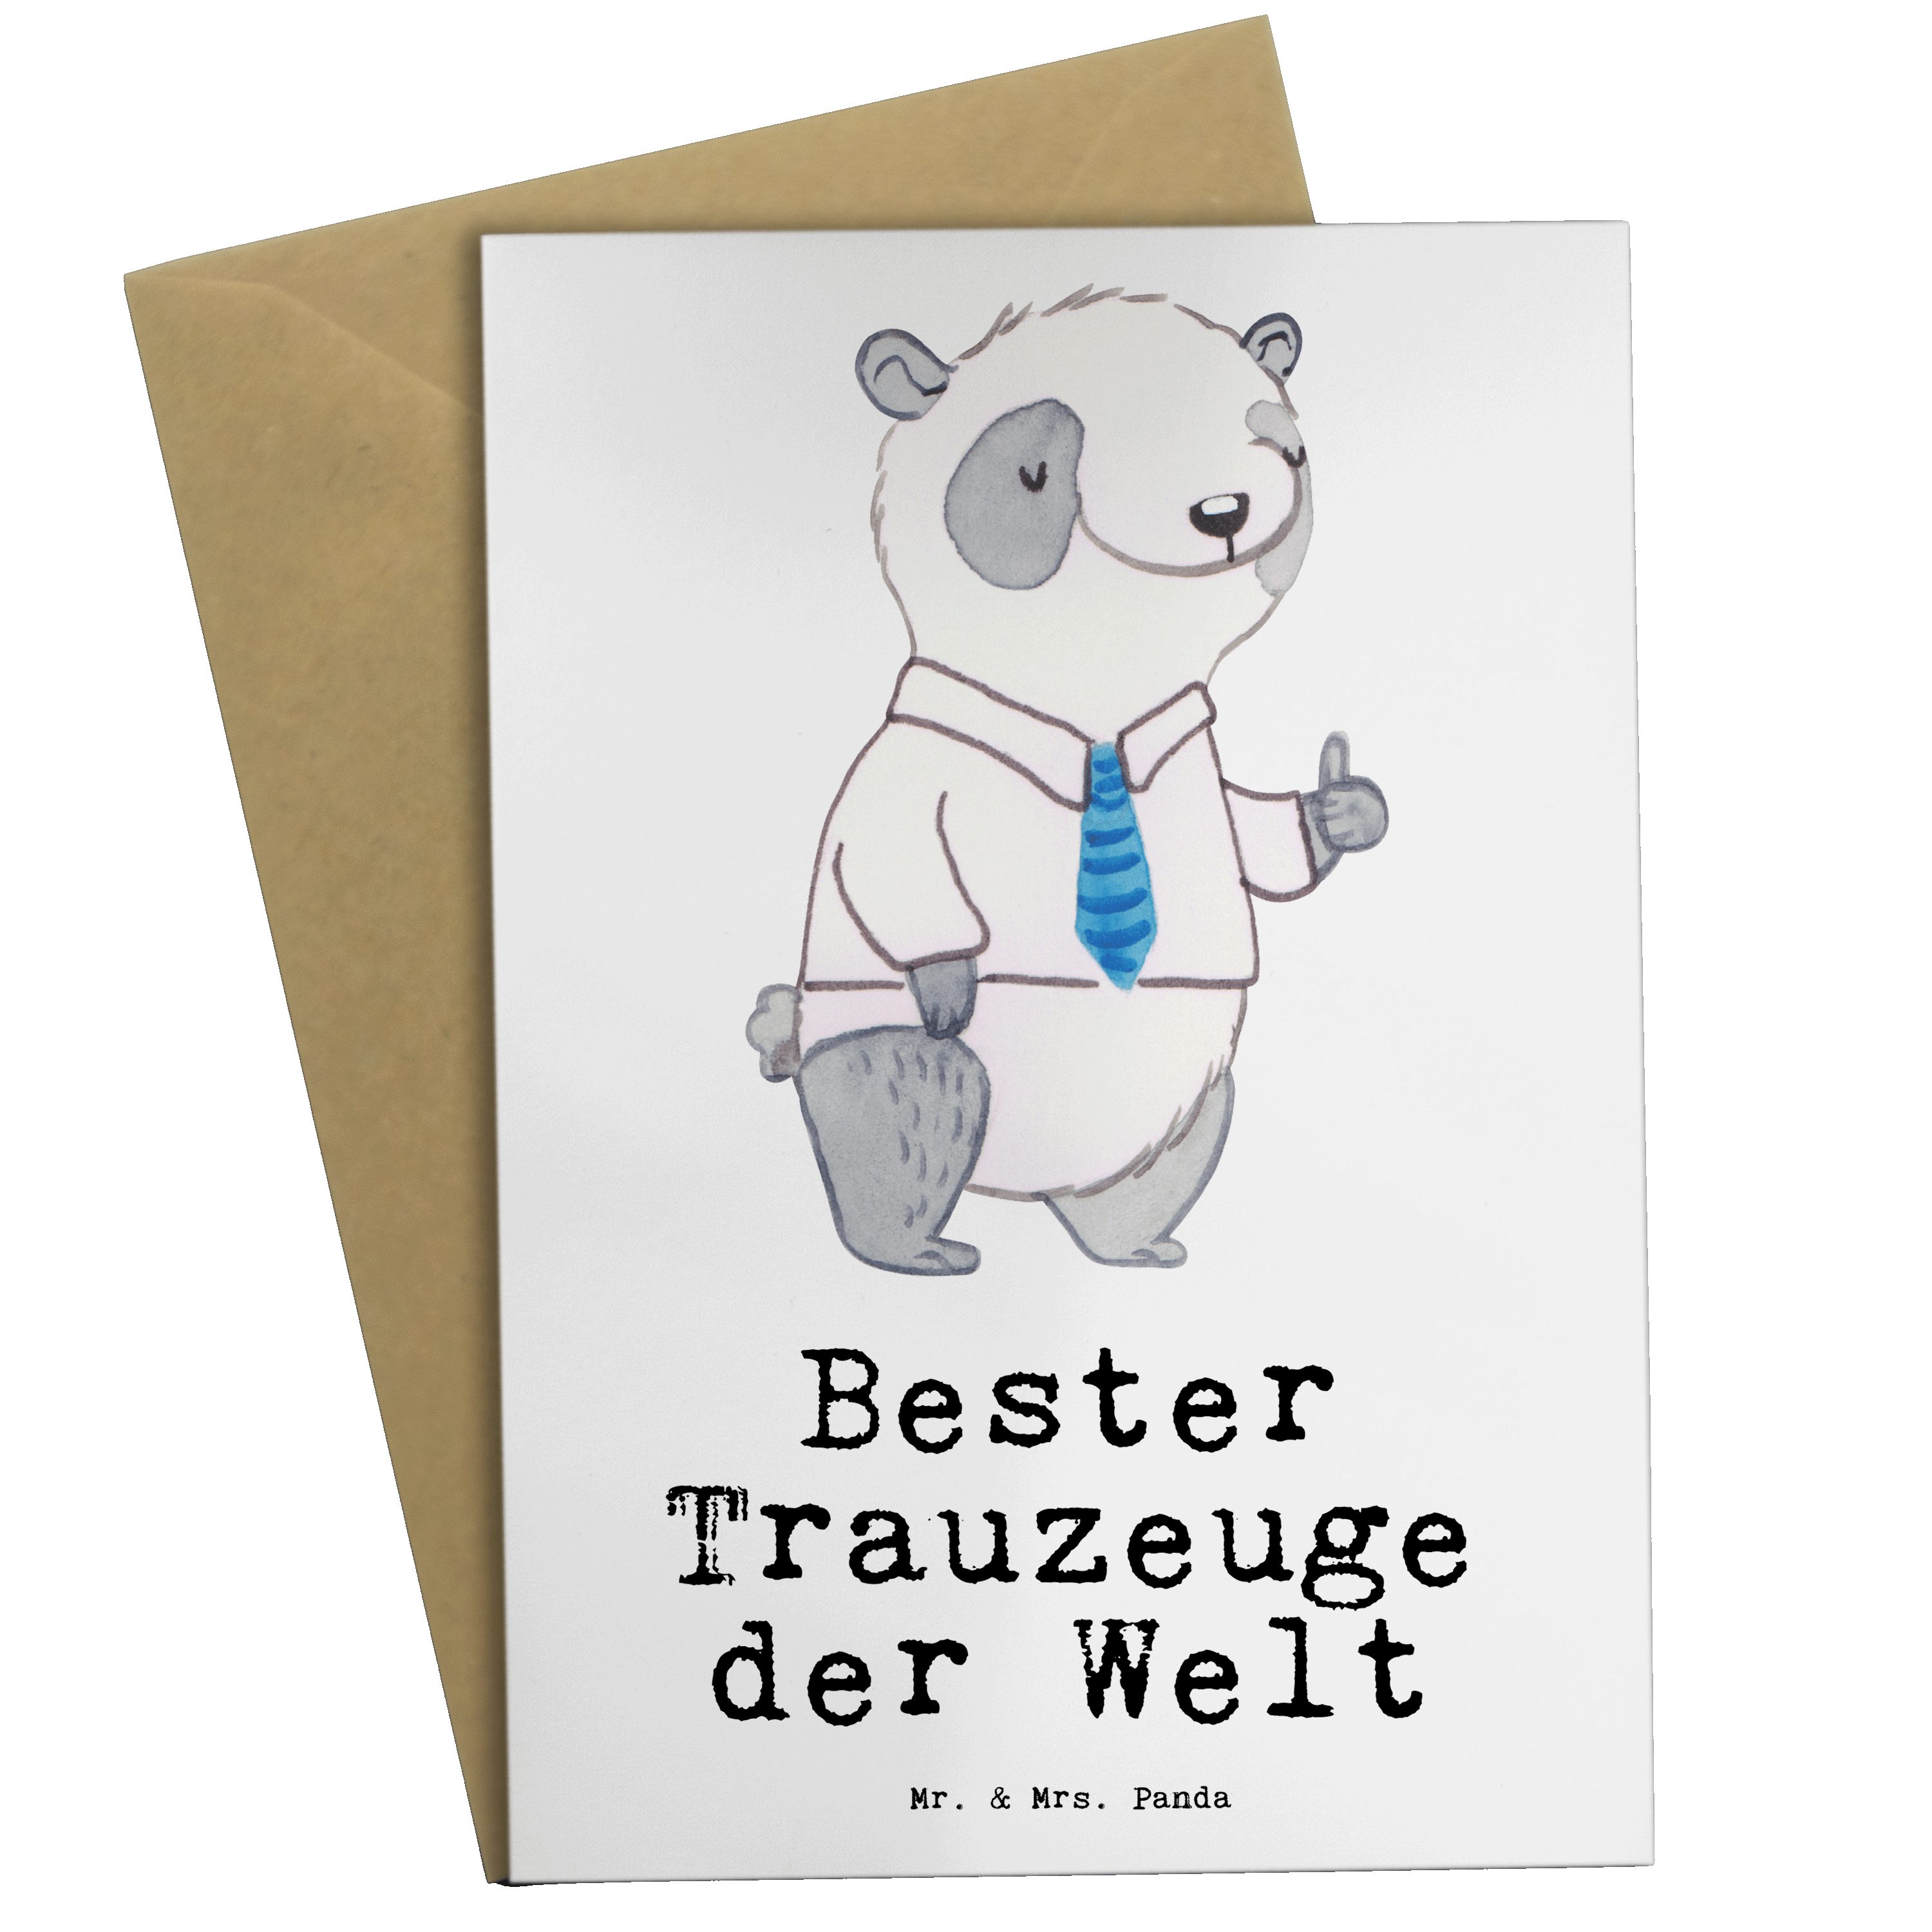 Mr. & Mrs. Panda Grußkarte Panda Bester Trauzeuge der Welt - Weiß - Geschenk, Hochzeit, Trauung